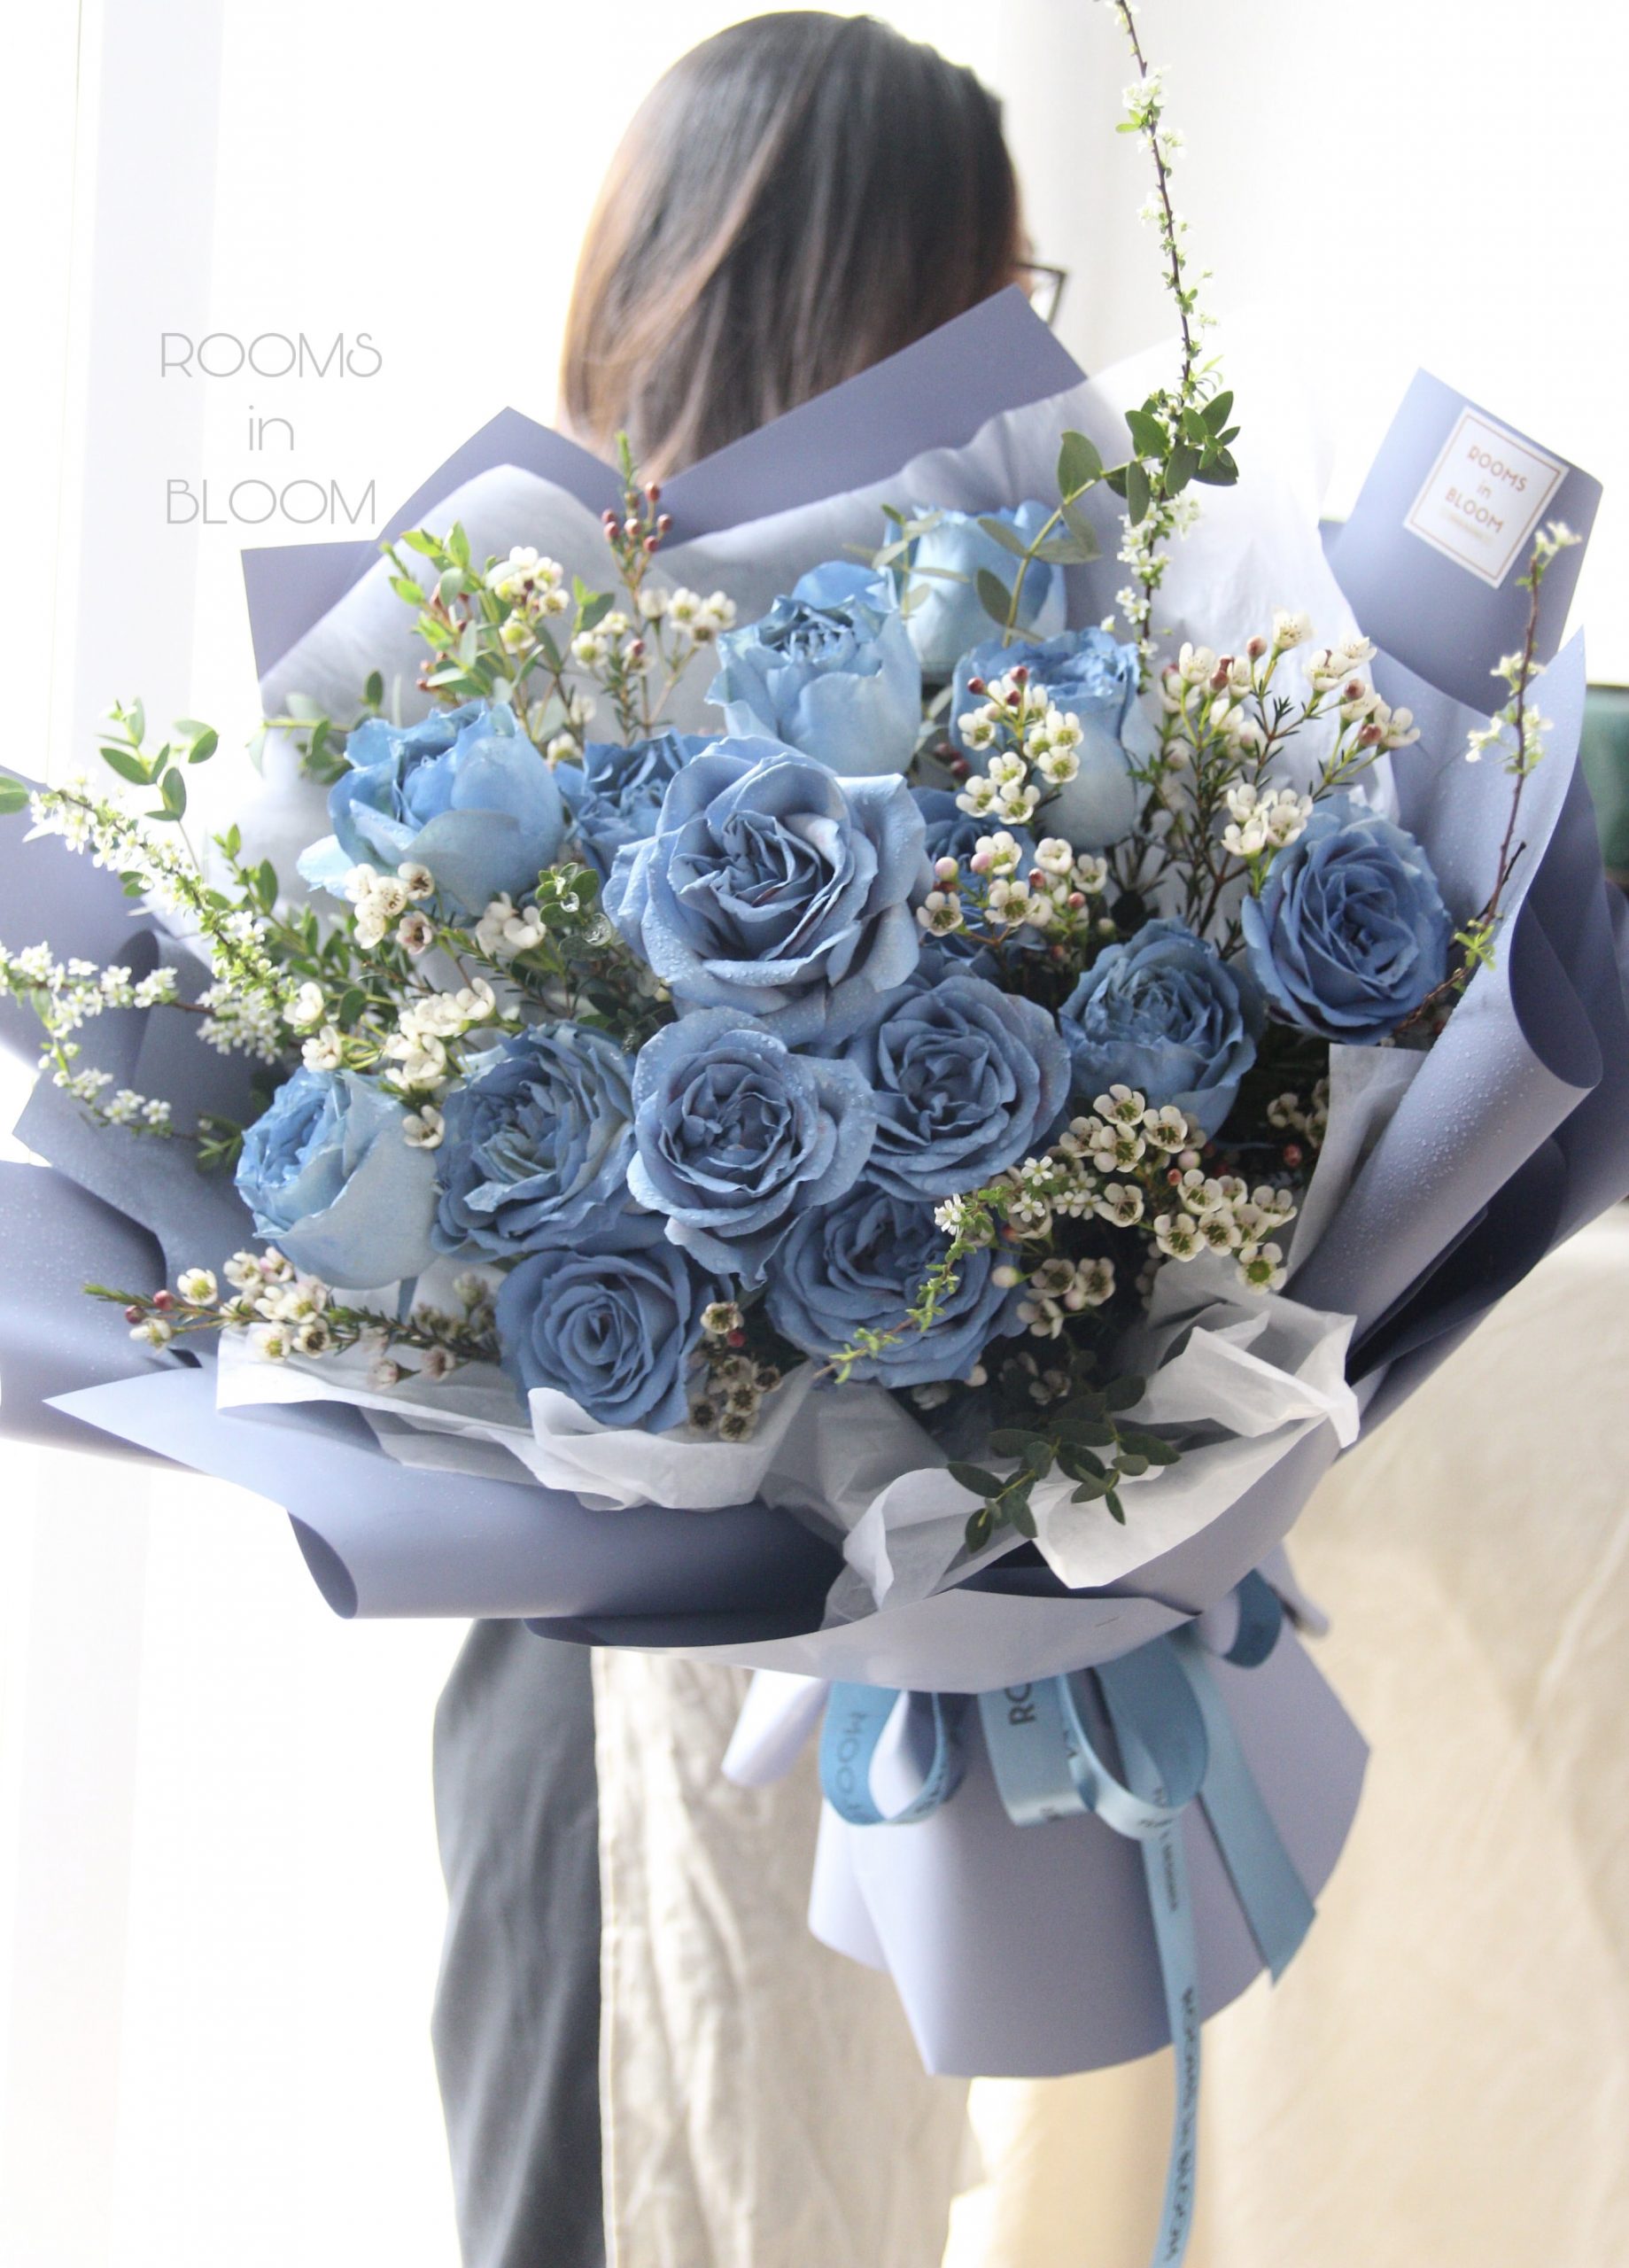 Bó hoa hồng xanh đẹp: Những bông hoa hồng xanh tươi tắn, thảo dược cũng nhẹ nhàng tạo nên bó hoa vô cùng đẹp mắt. Một món quà sang trọng và lãng mạn cho người thân yêu hoặc bạn bè của bạn. Hãy cùng khám phá hình ảnh đầy màu sắc của bó hoa hồng xanh đẹp nhé!